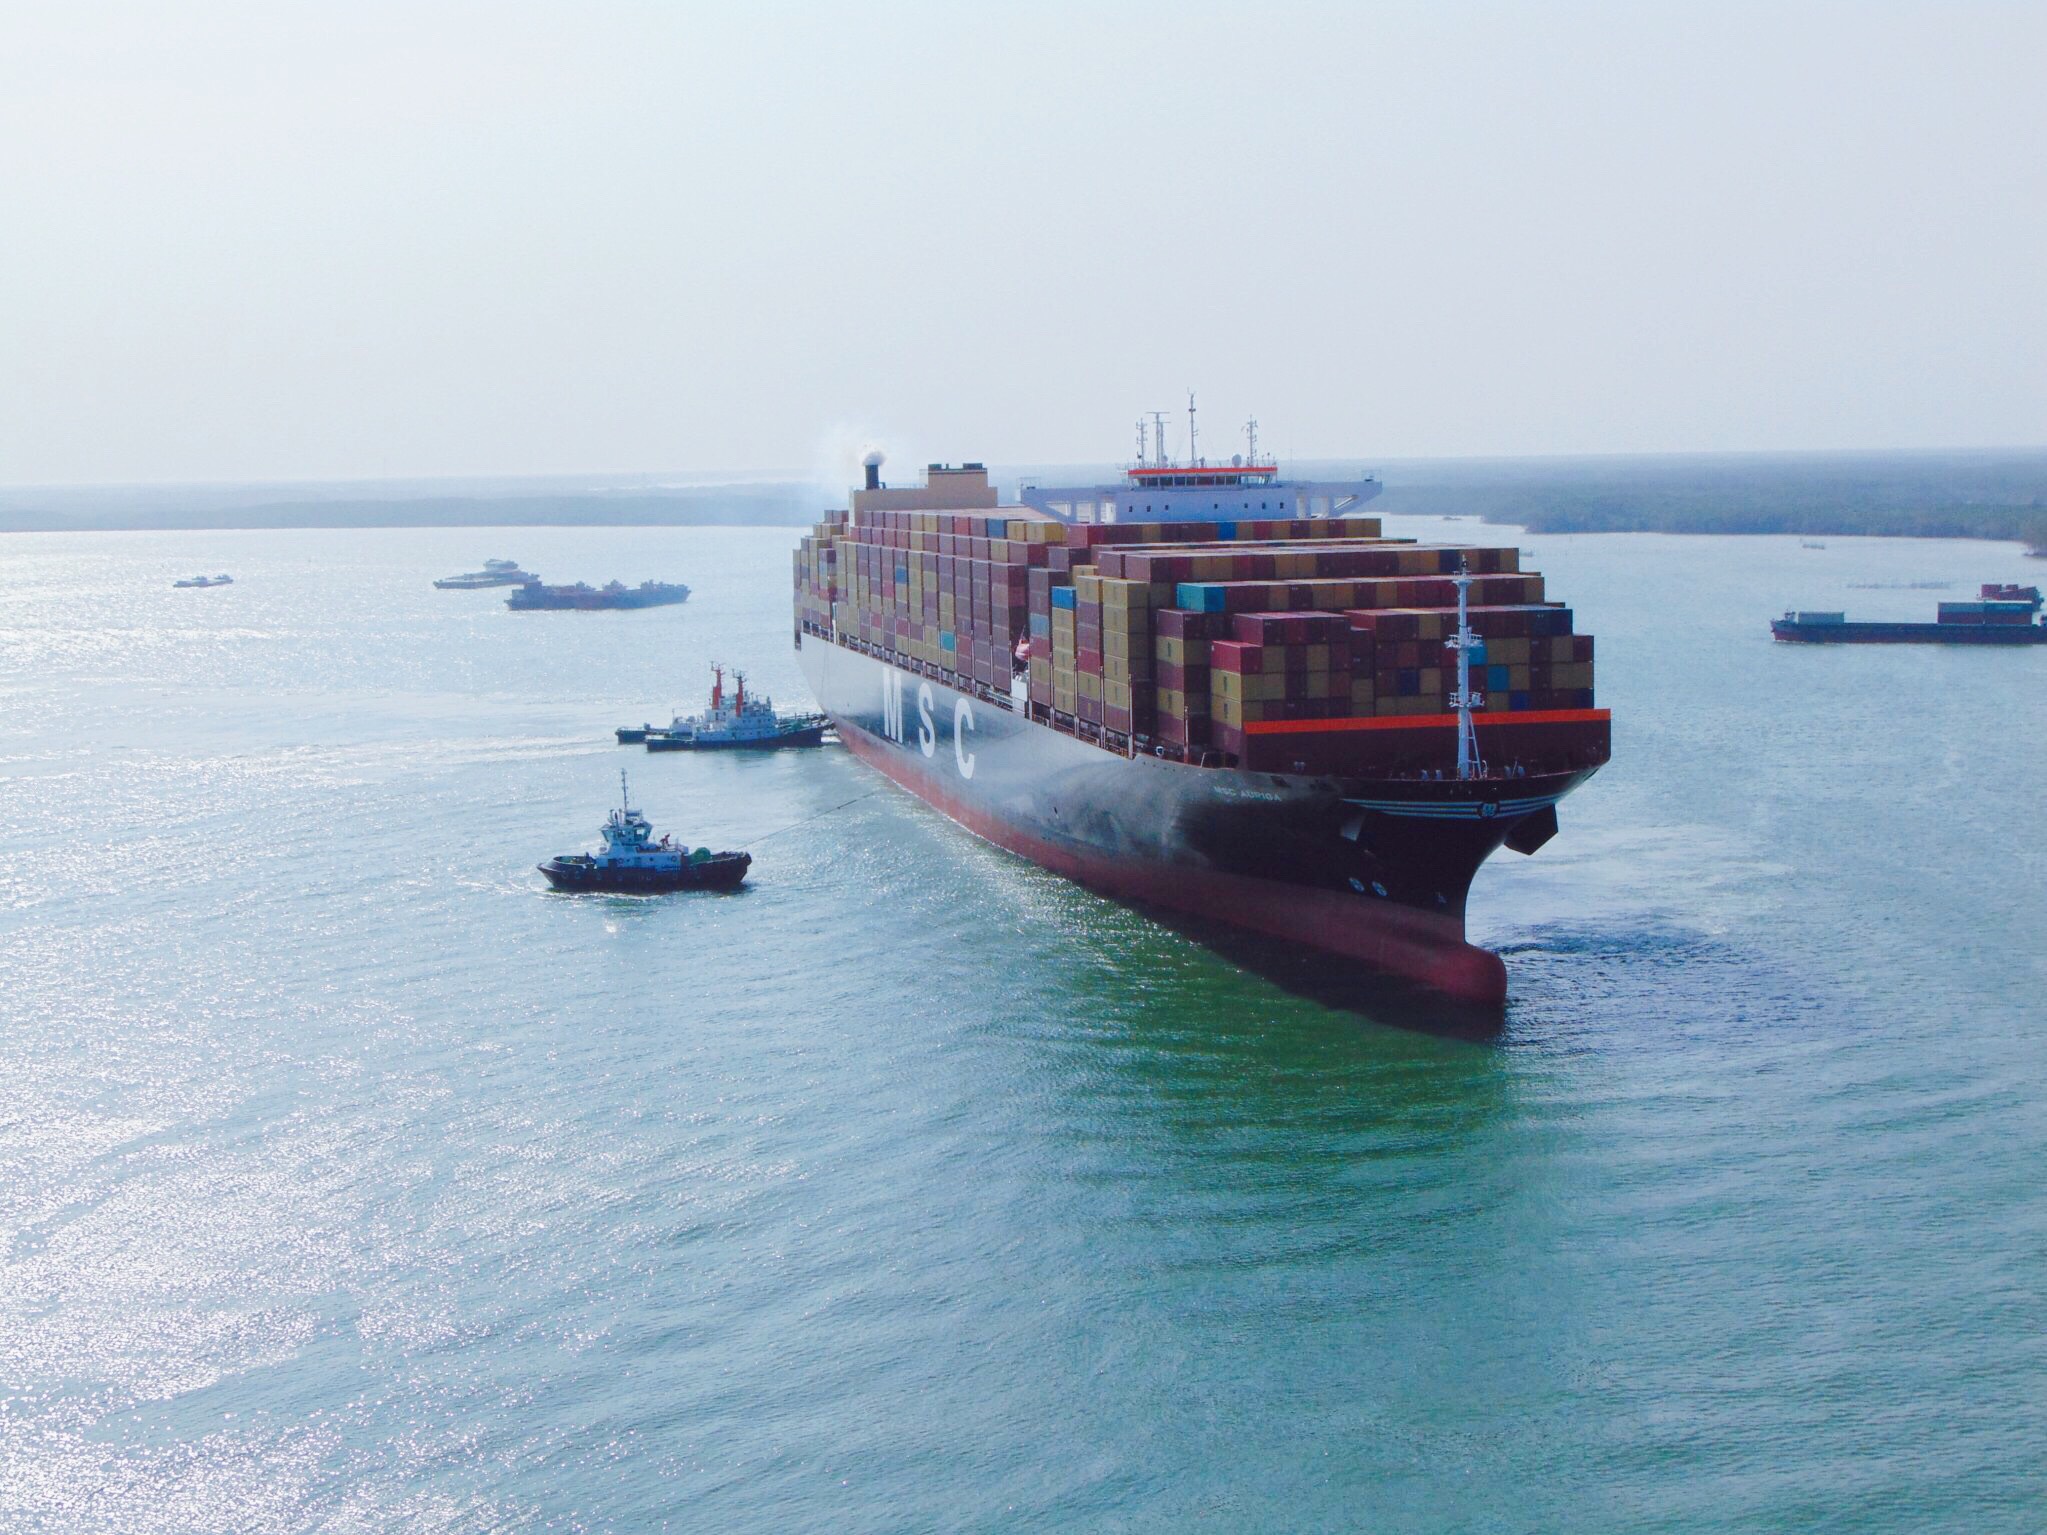 Tàu container vào cụm cảng Cái Mép – Thị Vải được dẫn bởi lực lượng hoa tiêu.